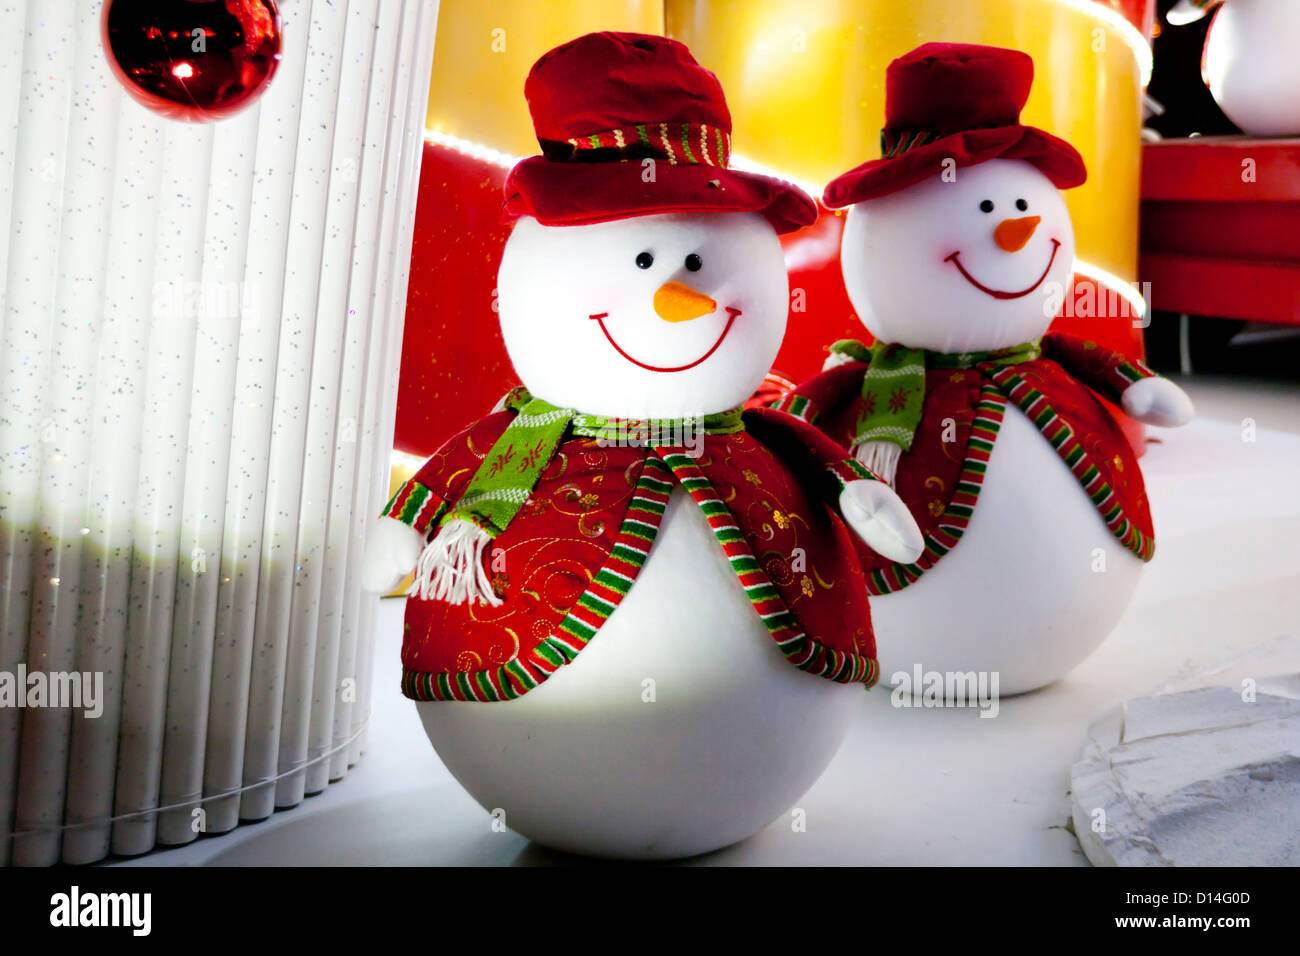 Muñeco de nieve en el exterior las luces de decoración navideña Foto de stock